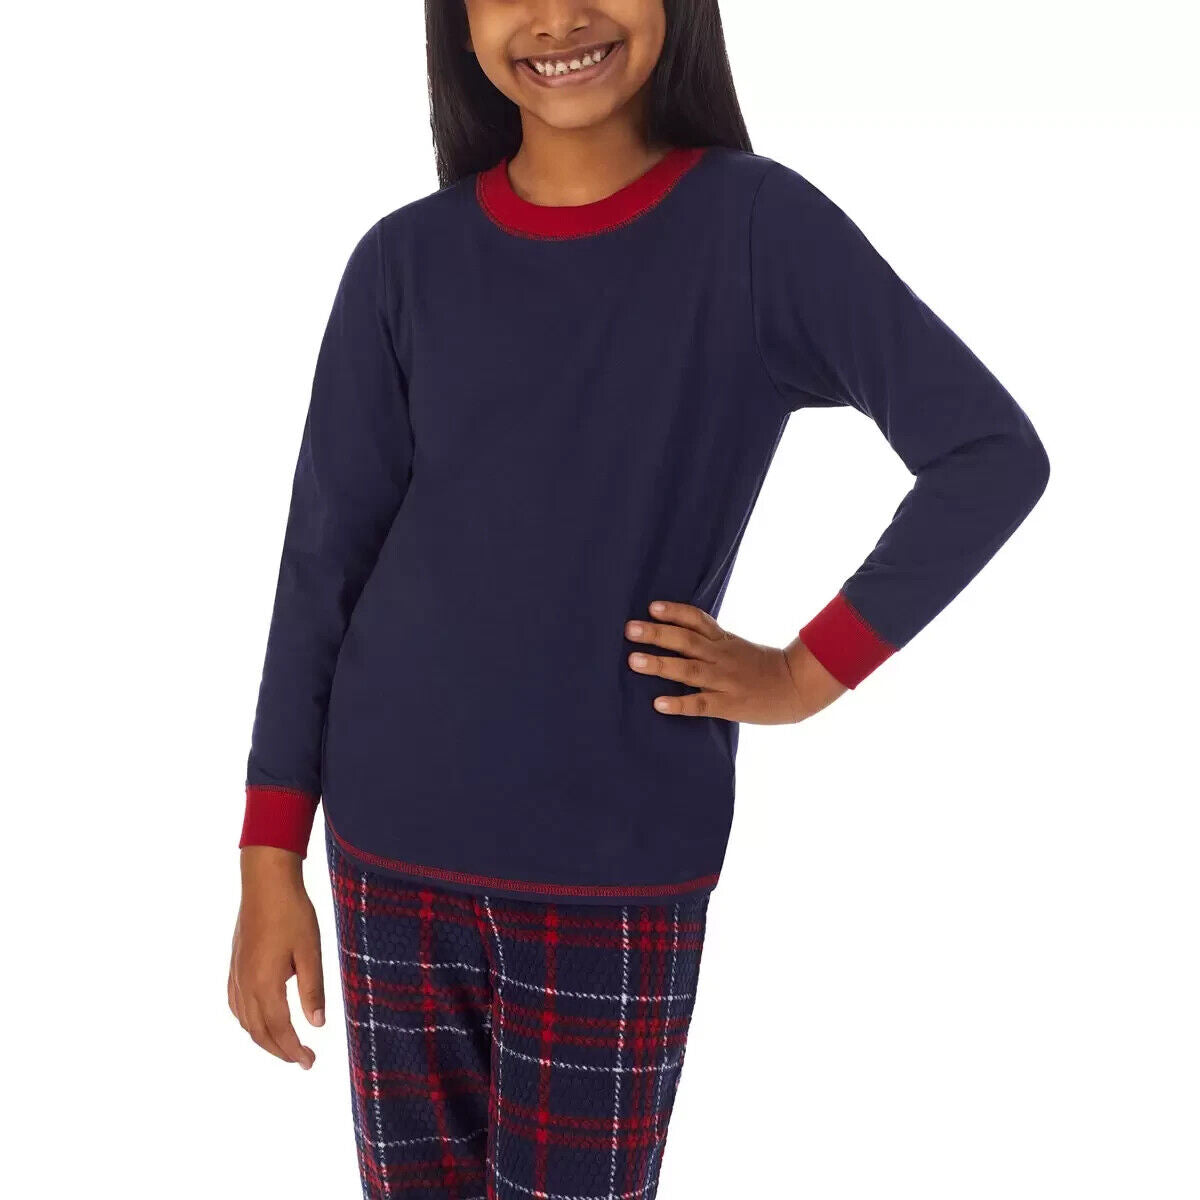 Weatherproof Children's Family Pyjama Set in Navy. Size 10-12